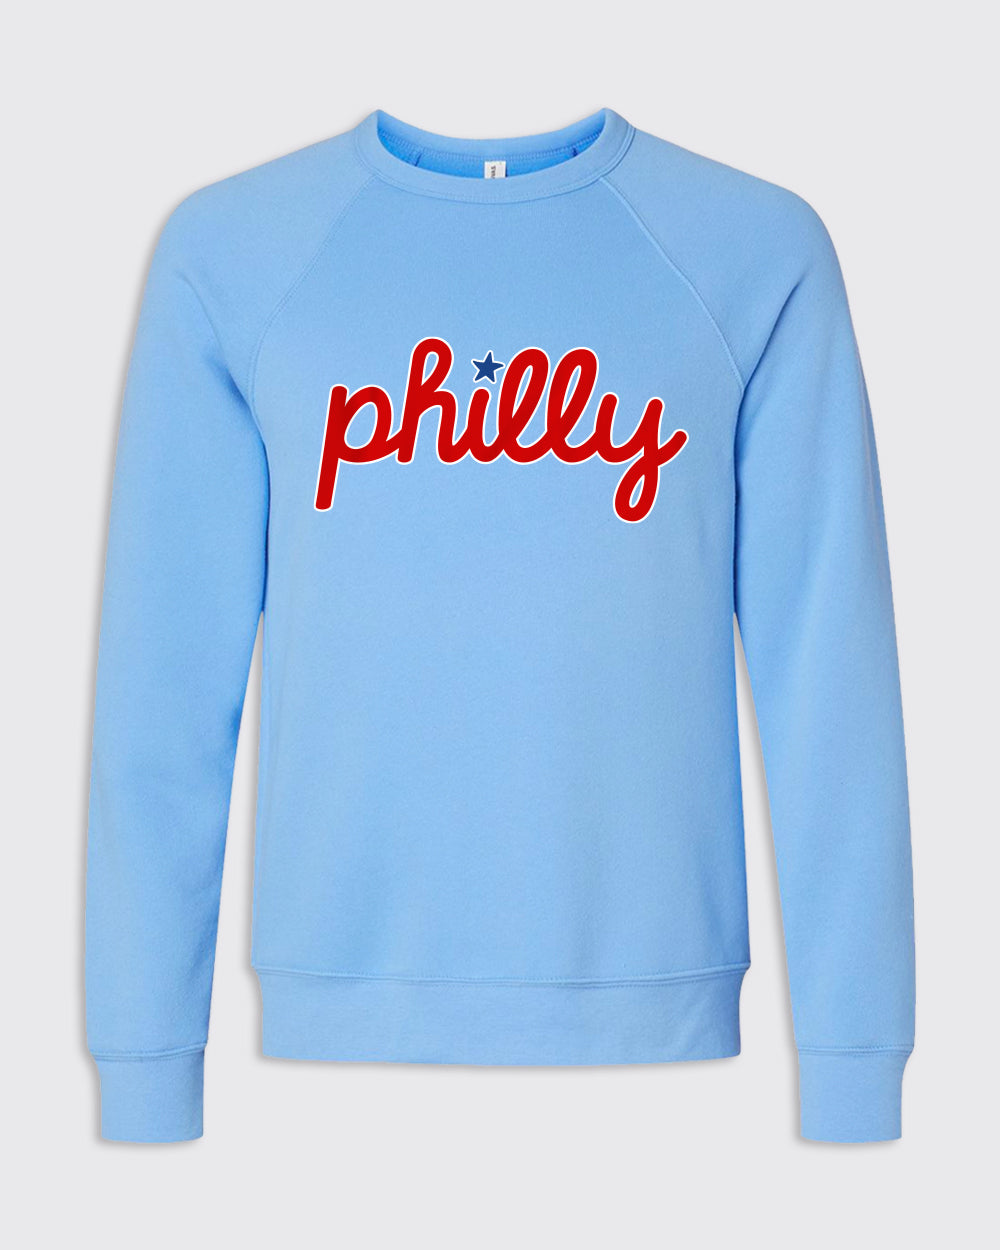 phillies sweatshirt light blue